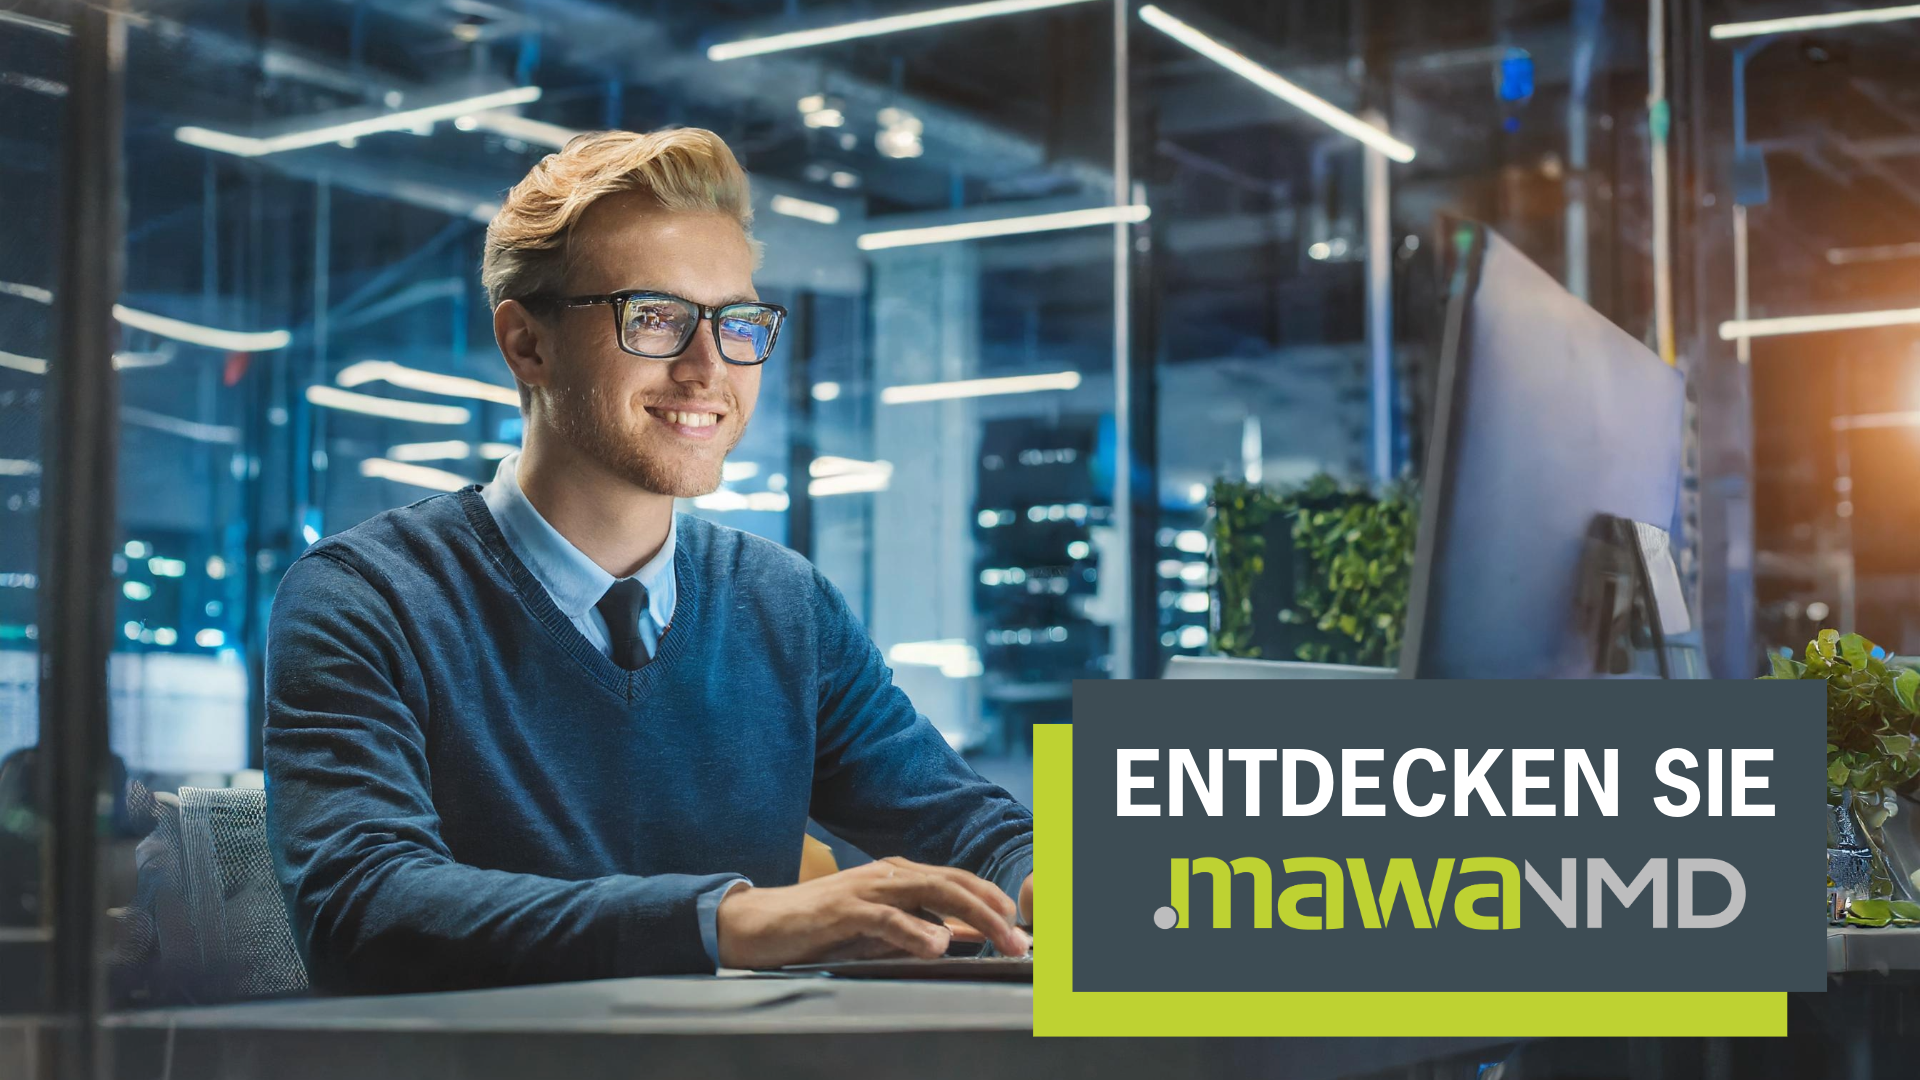 Mit dem Cisco Switch Administration Tool .mawaNMD von mawa-solutions administrieren, konfigurieren und verwalten Sie Ihre Cisco Switches effizient und ohne Fachwissen direkt im Browser - plattform- und geräteunabhängig.